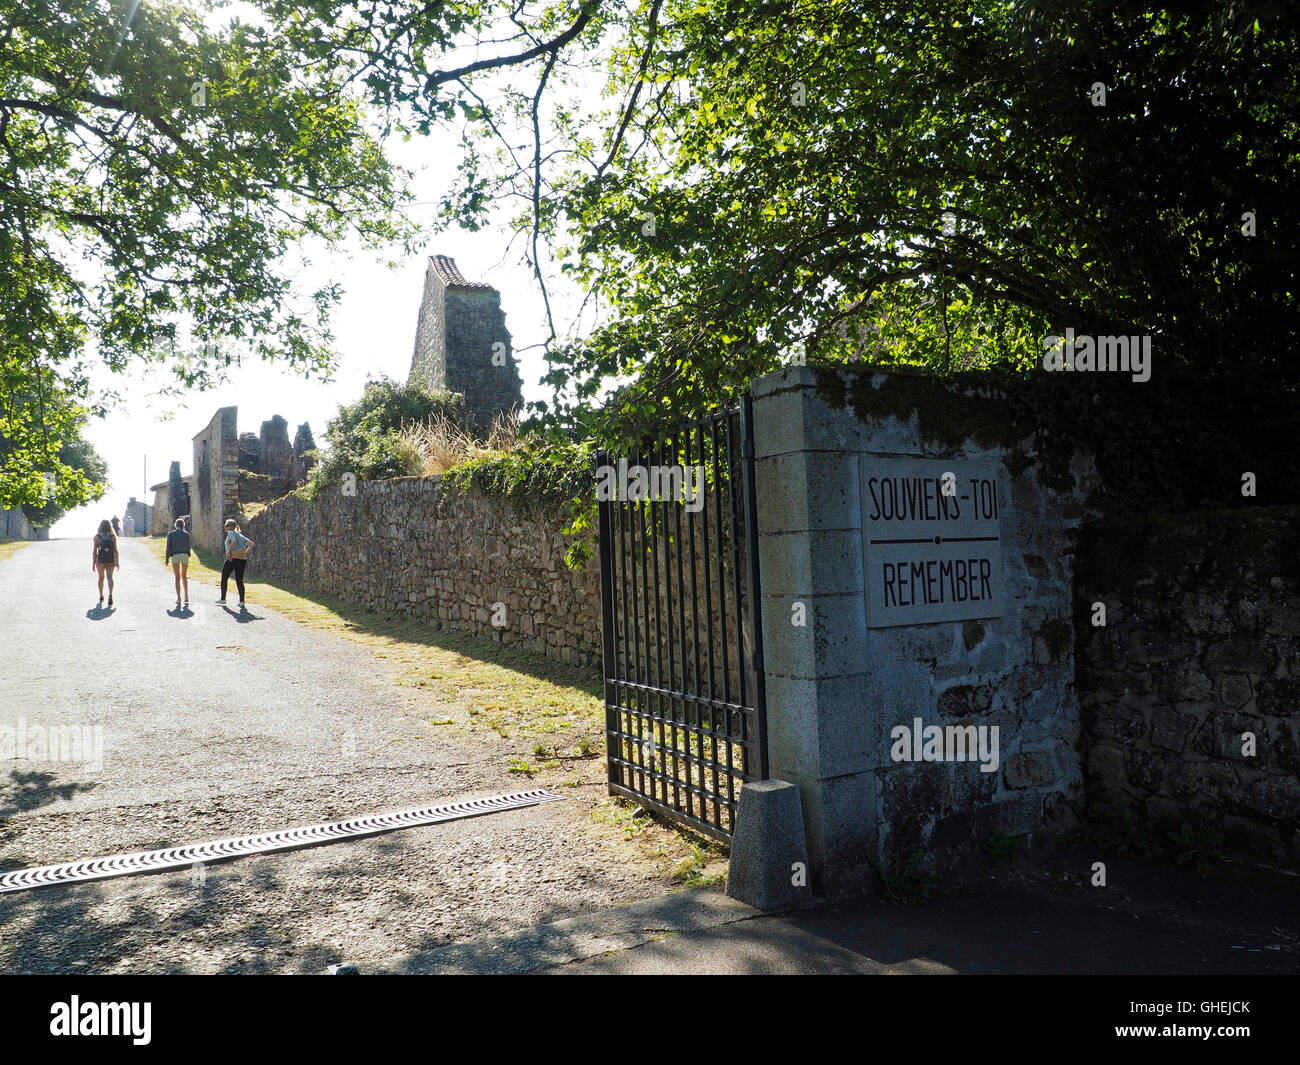 Eingang von der Krieg Memorial Museum Dorf Oradour Sur Glane in Frankreich, mit Souviens Toi erinnern Zeichen. Stockfoto